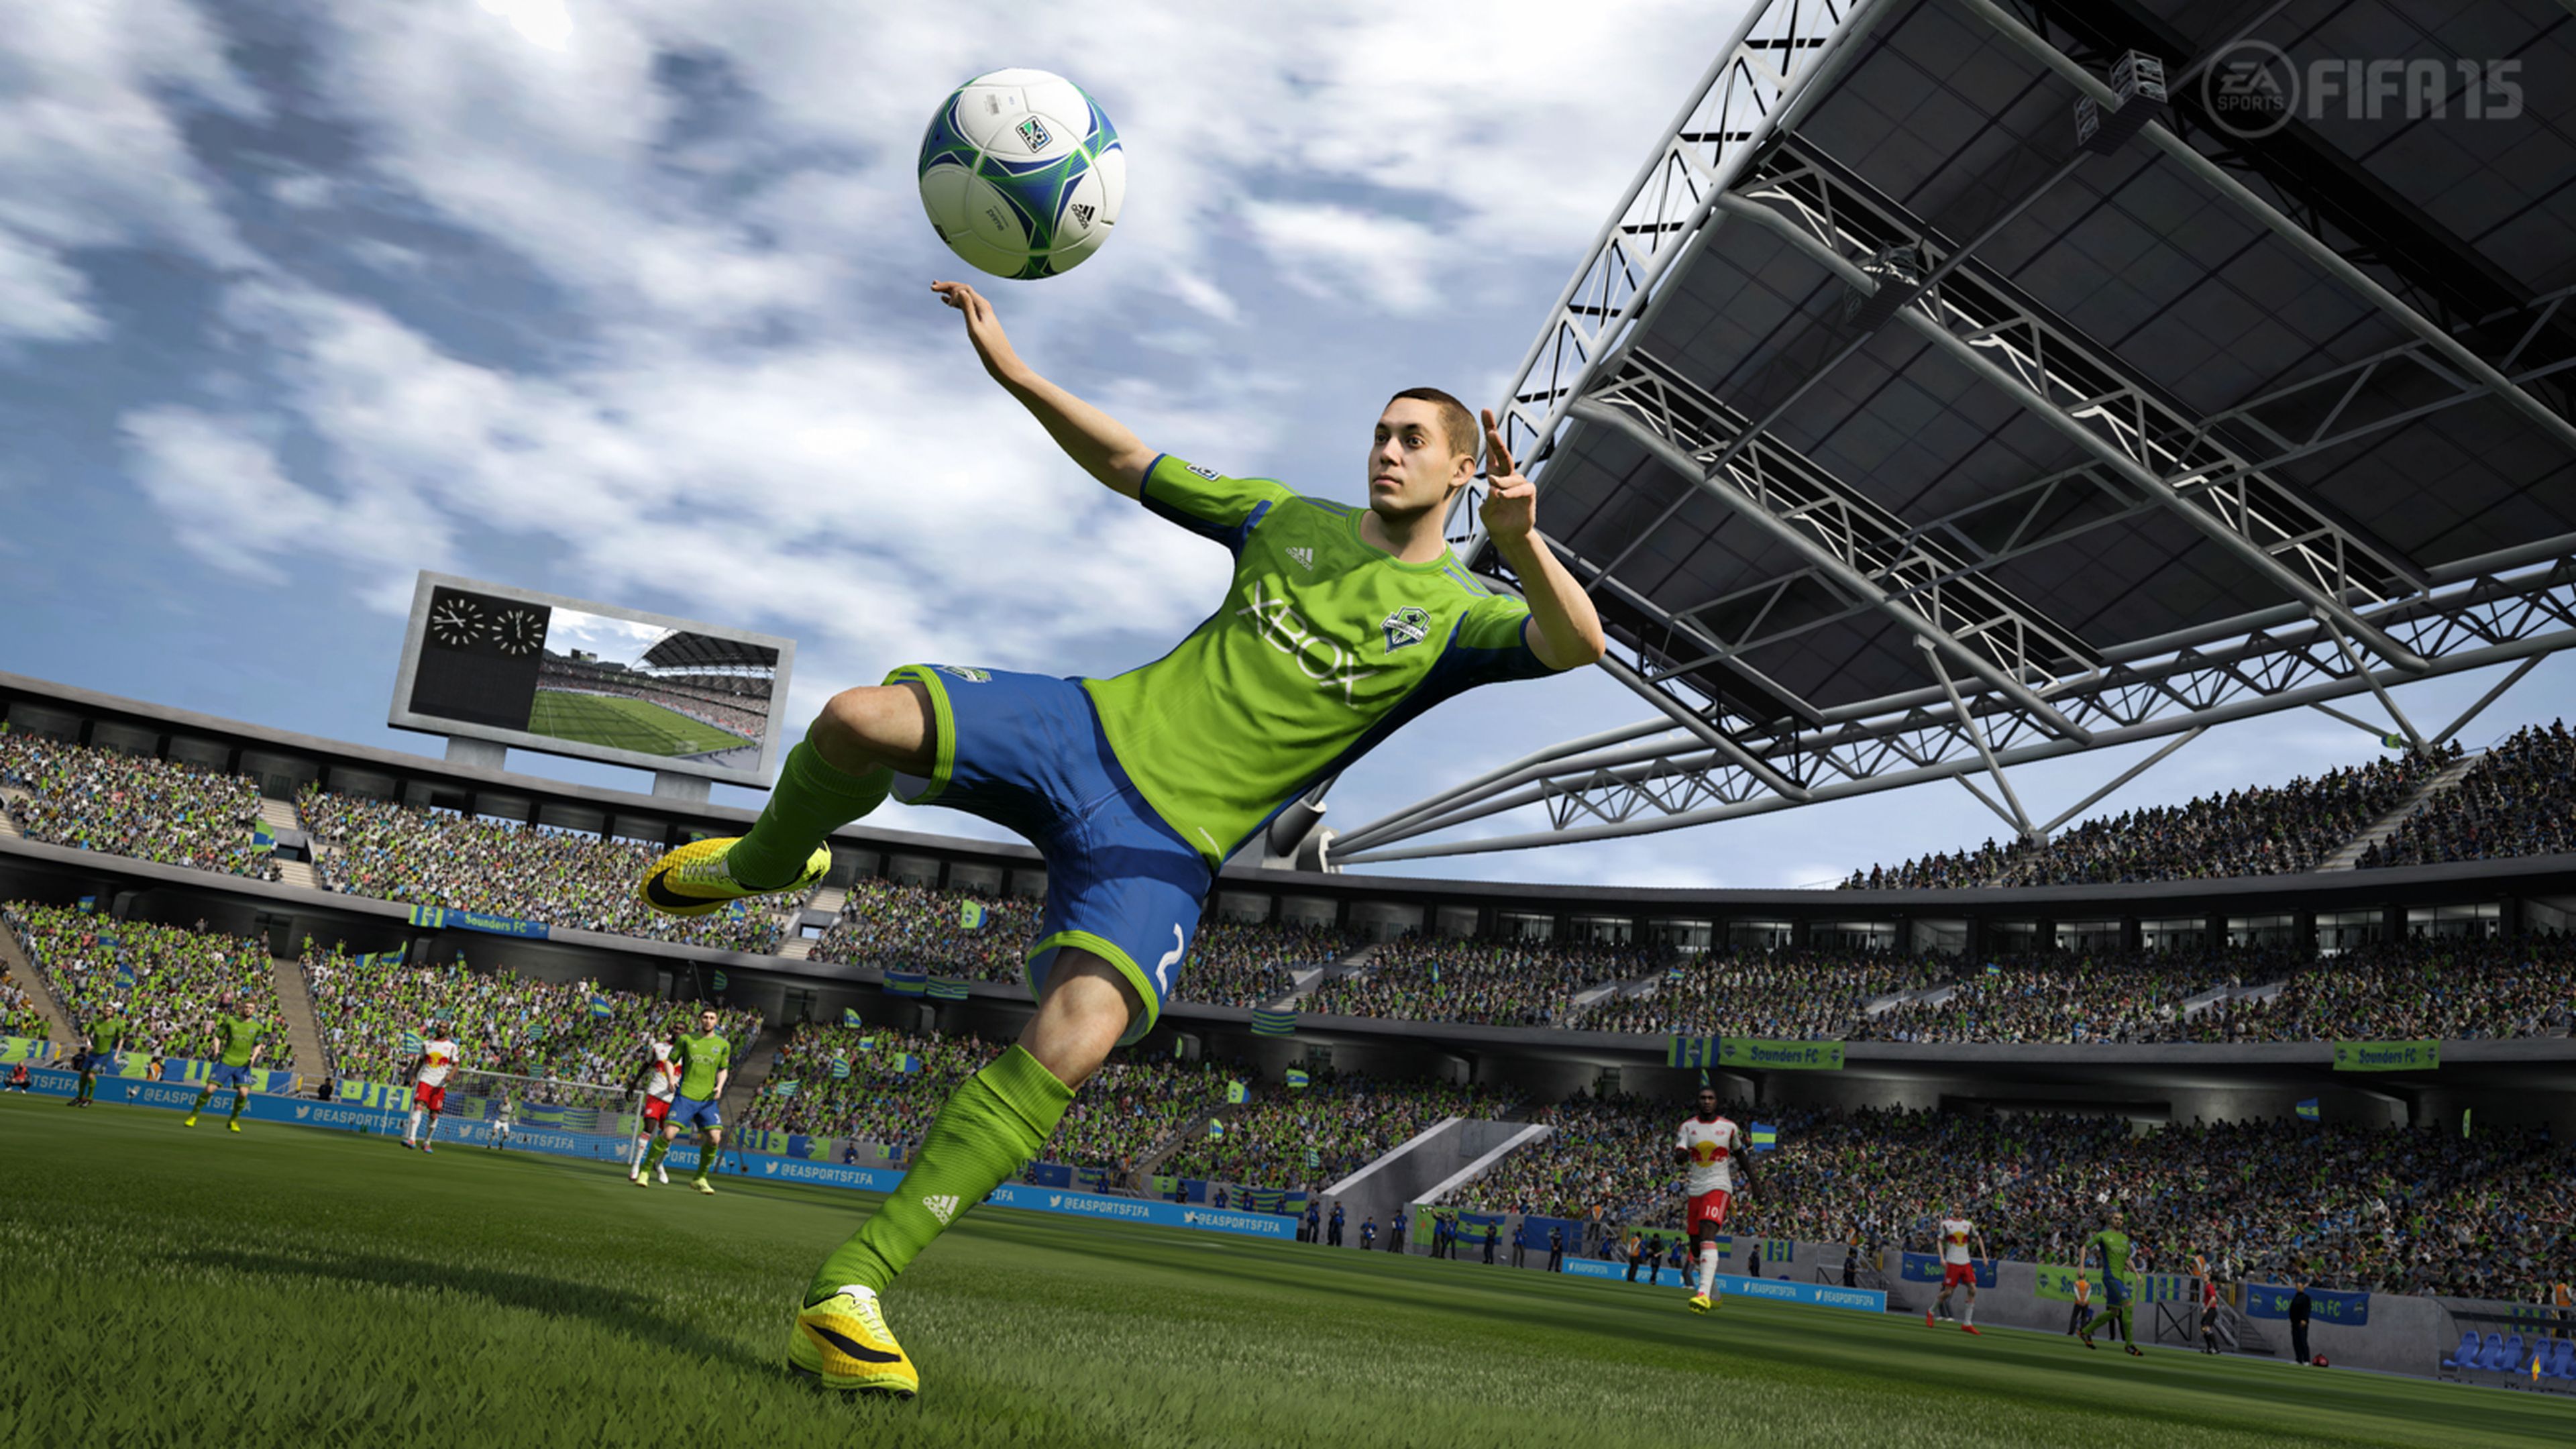 Avance: Los fichajes de FIFA 15 y PES 2015